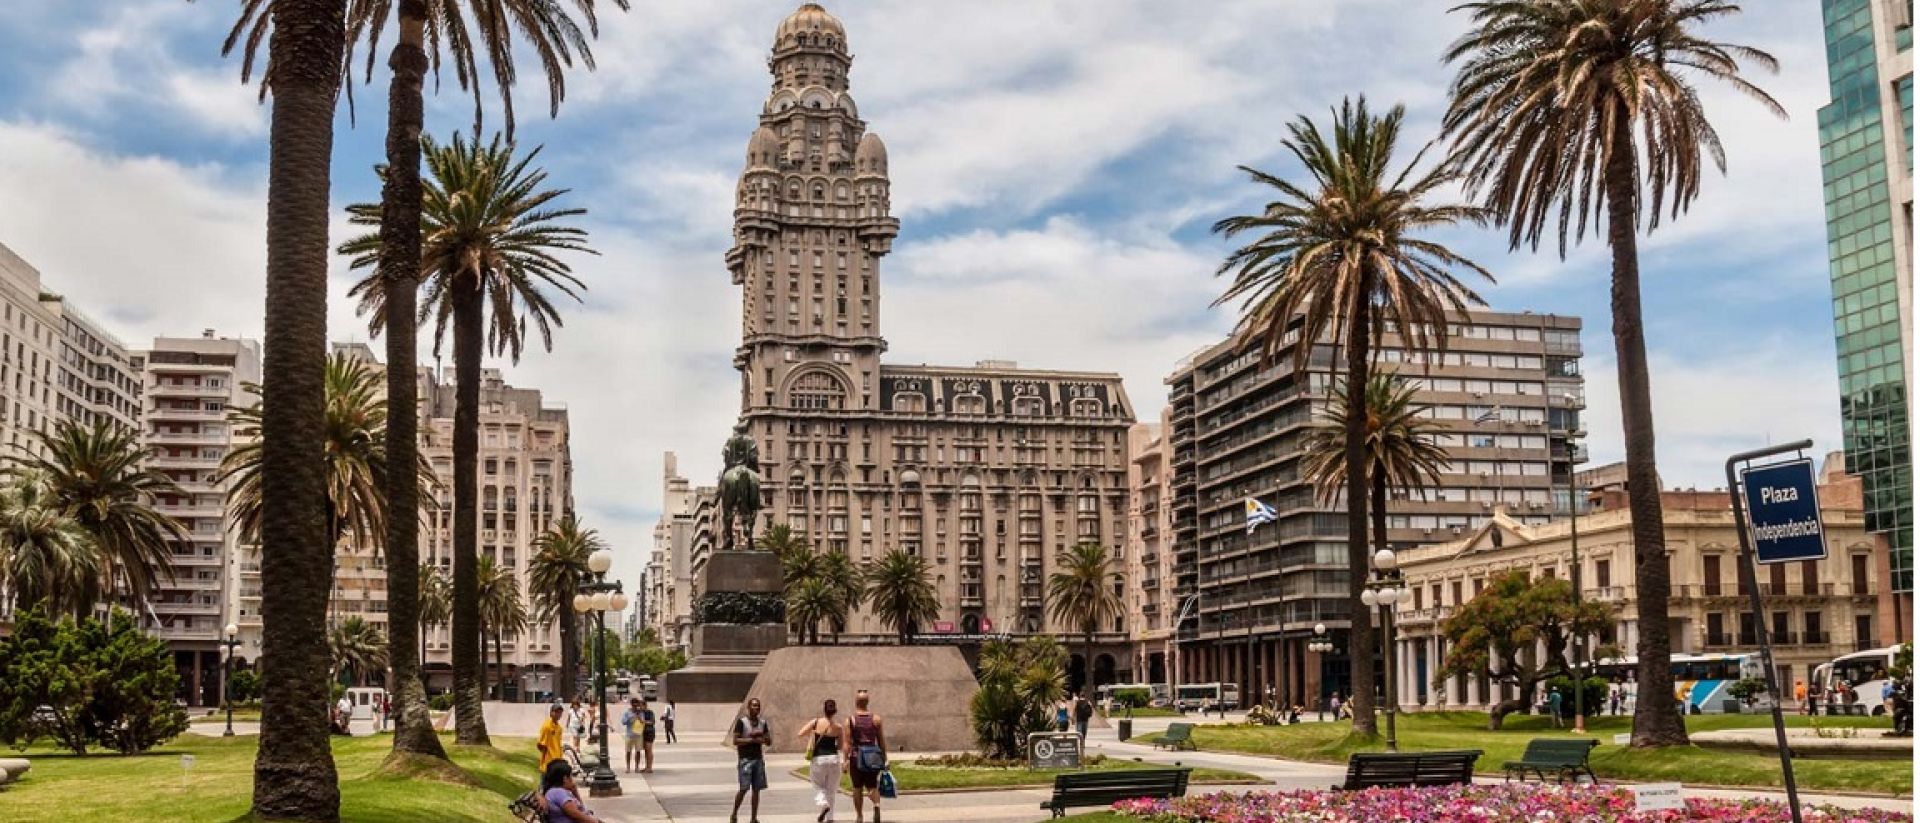 Publicados los requisitos para viajar a Uruguay Expreso